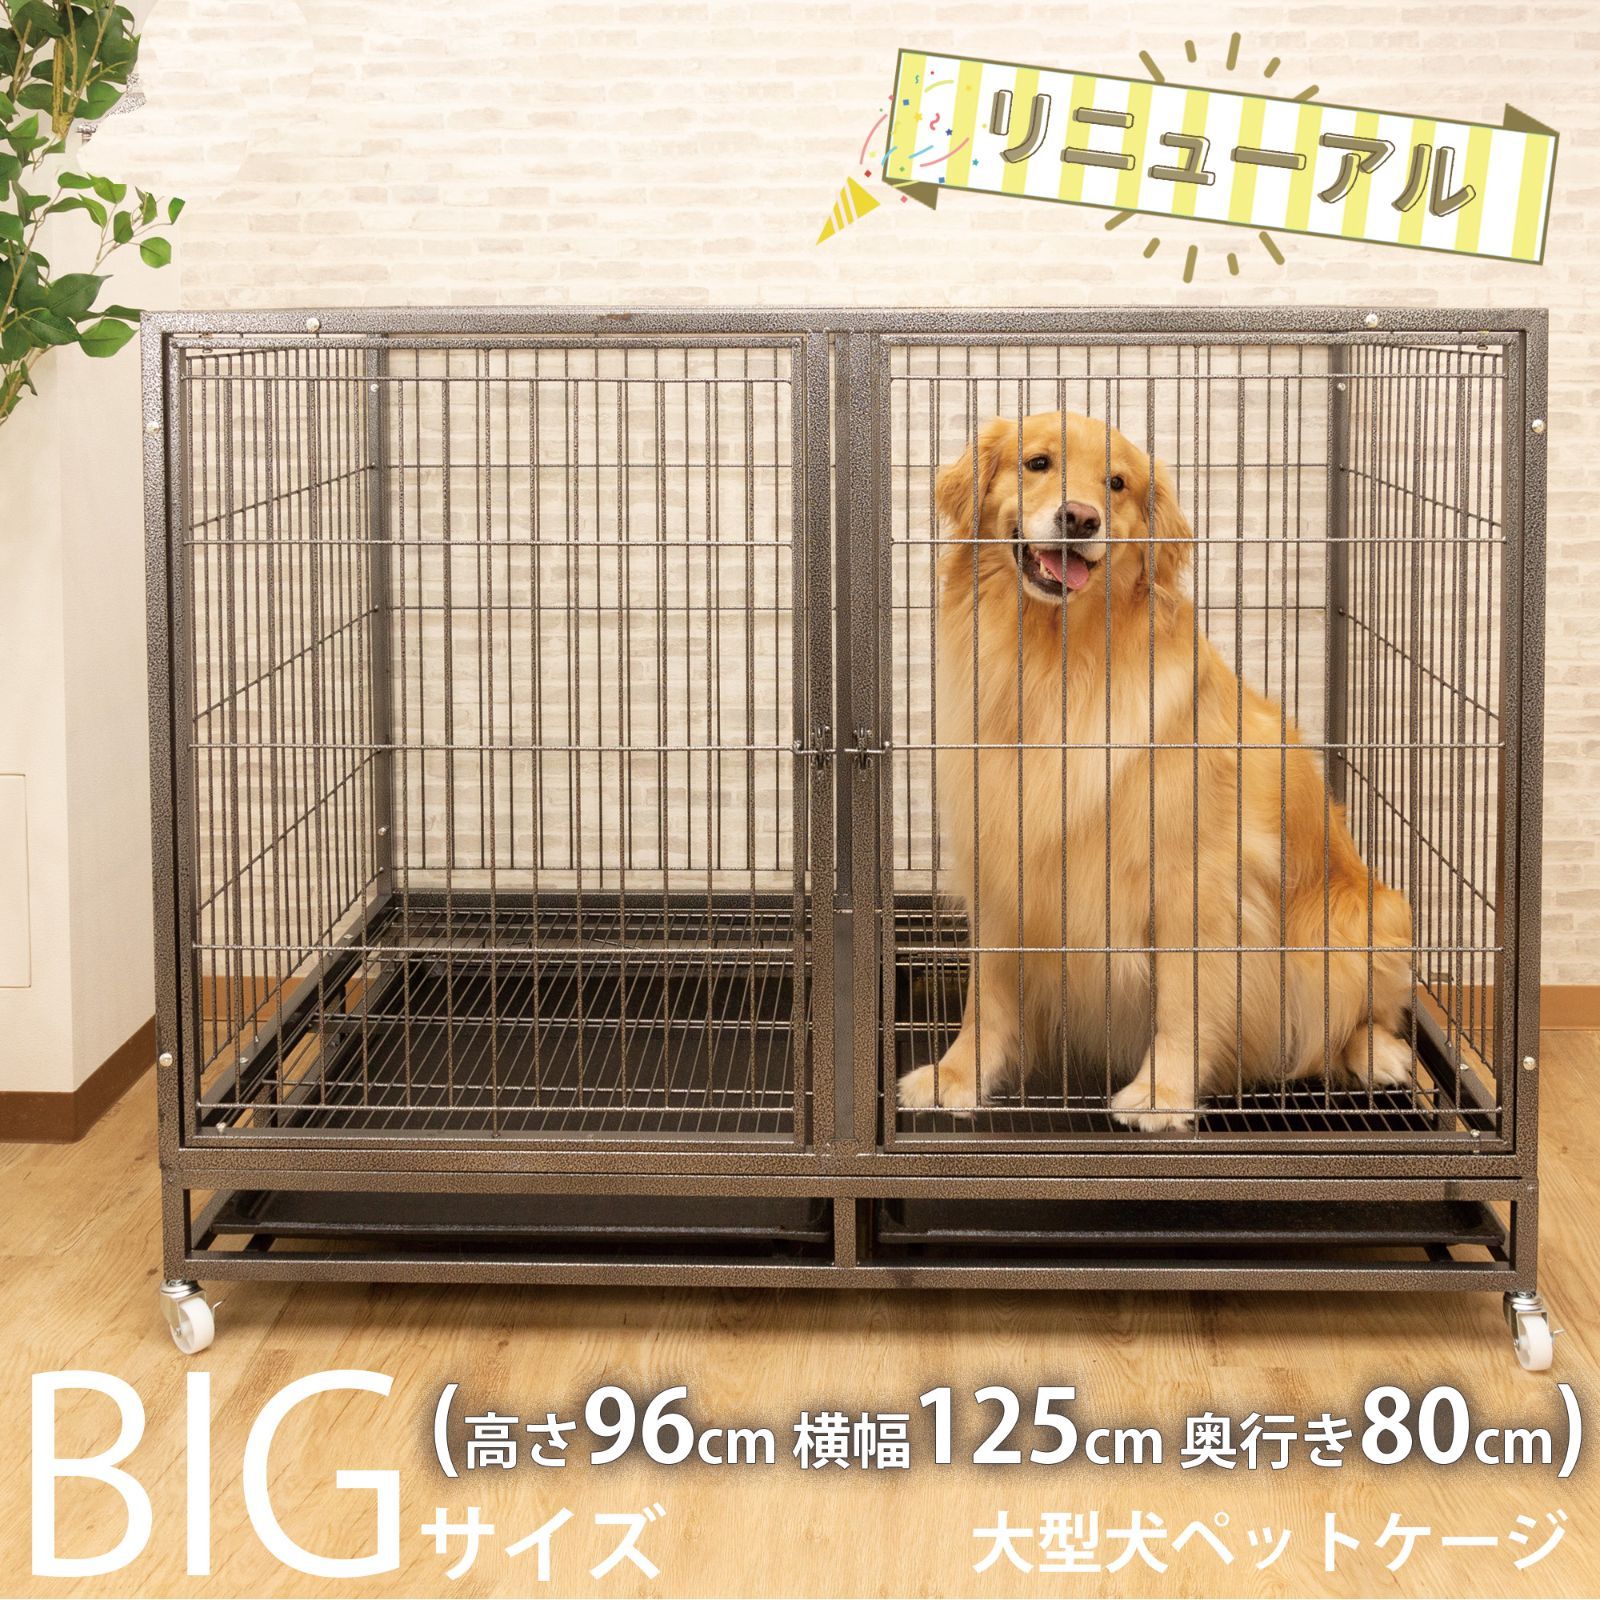 【新品】大型犬ペットケージ 頑丈犬用ゲージ キャスター屋根付き トイレトレー付